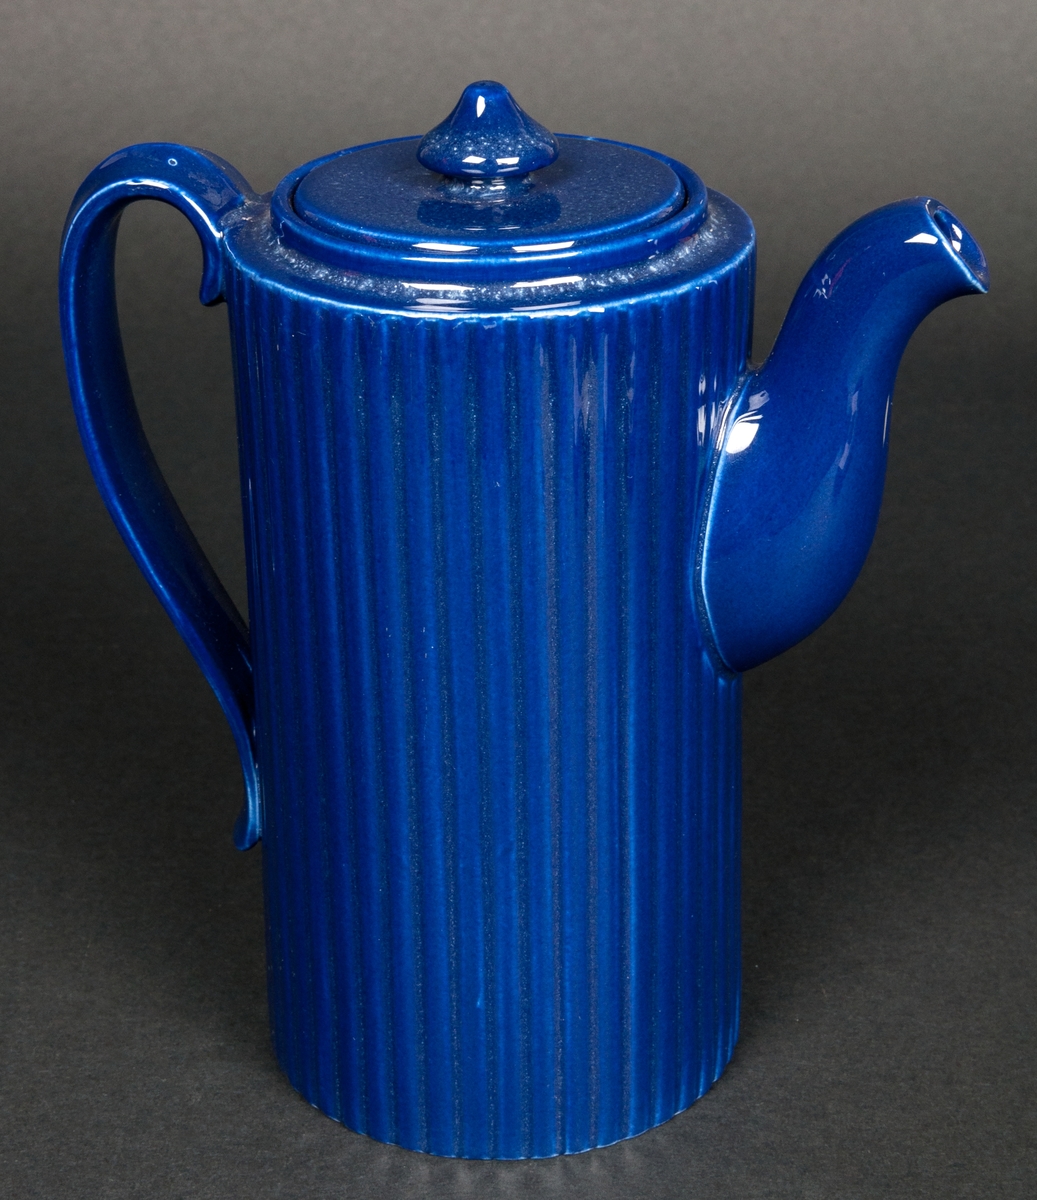 Kaffekanna med lock i cylinderform. Räfflad dekor och med stark blå färg. Ostämplad. Formgiven av Arthur Percy vid Gefle Porslinsfabrik, 1950-tal. 
Hör samman med gräddkannan 35786.